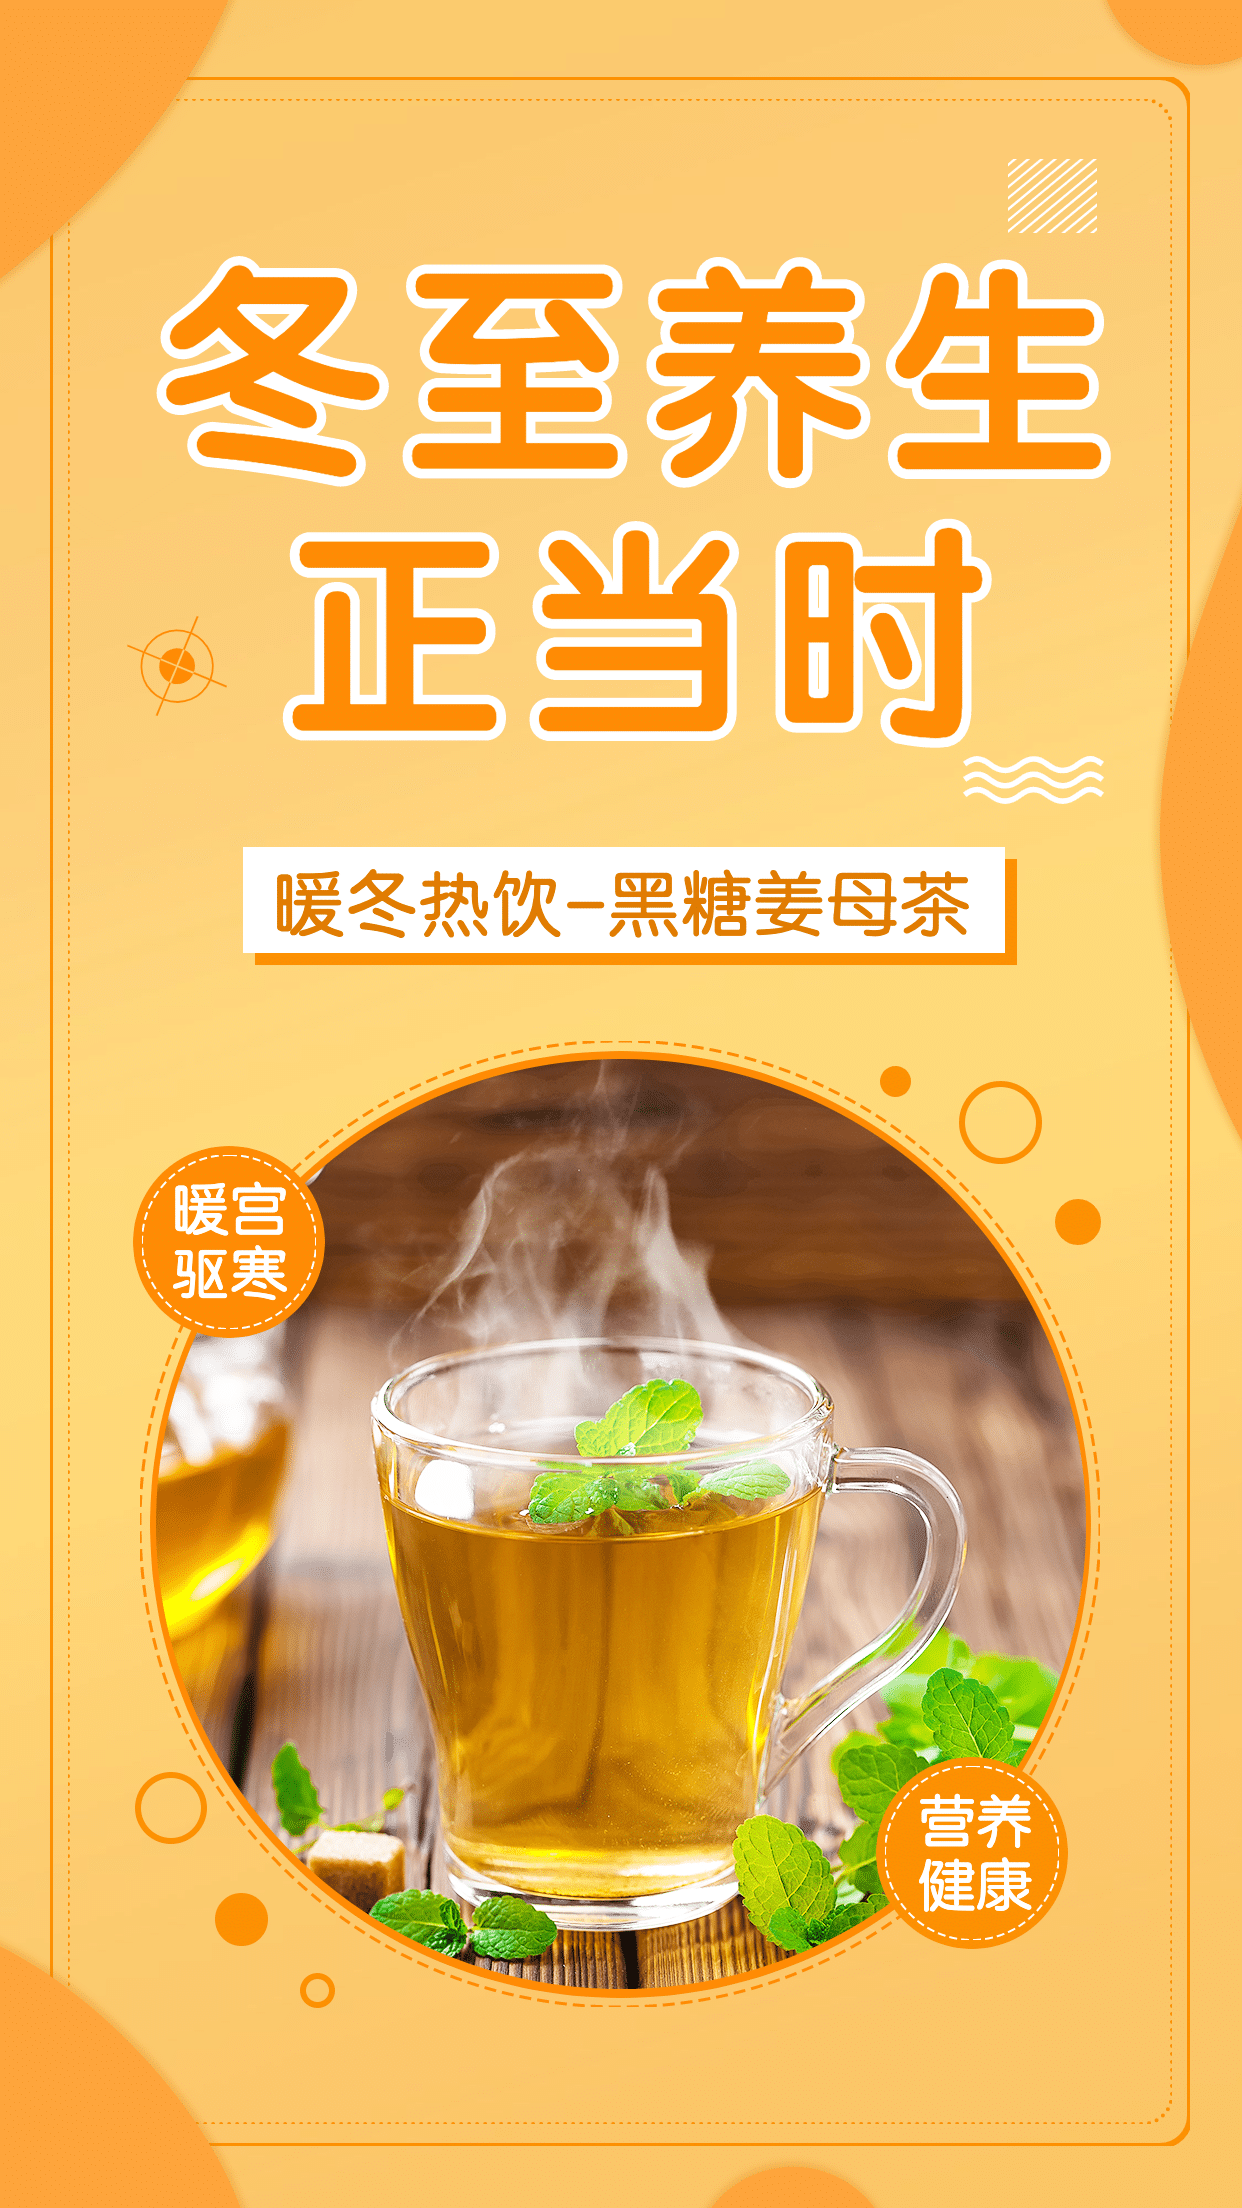 冬至养生茶营销产品展示温暖橘色预览效果